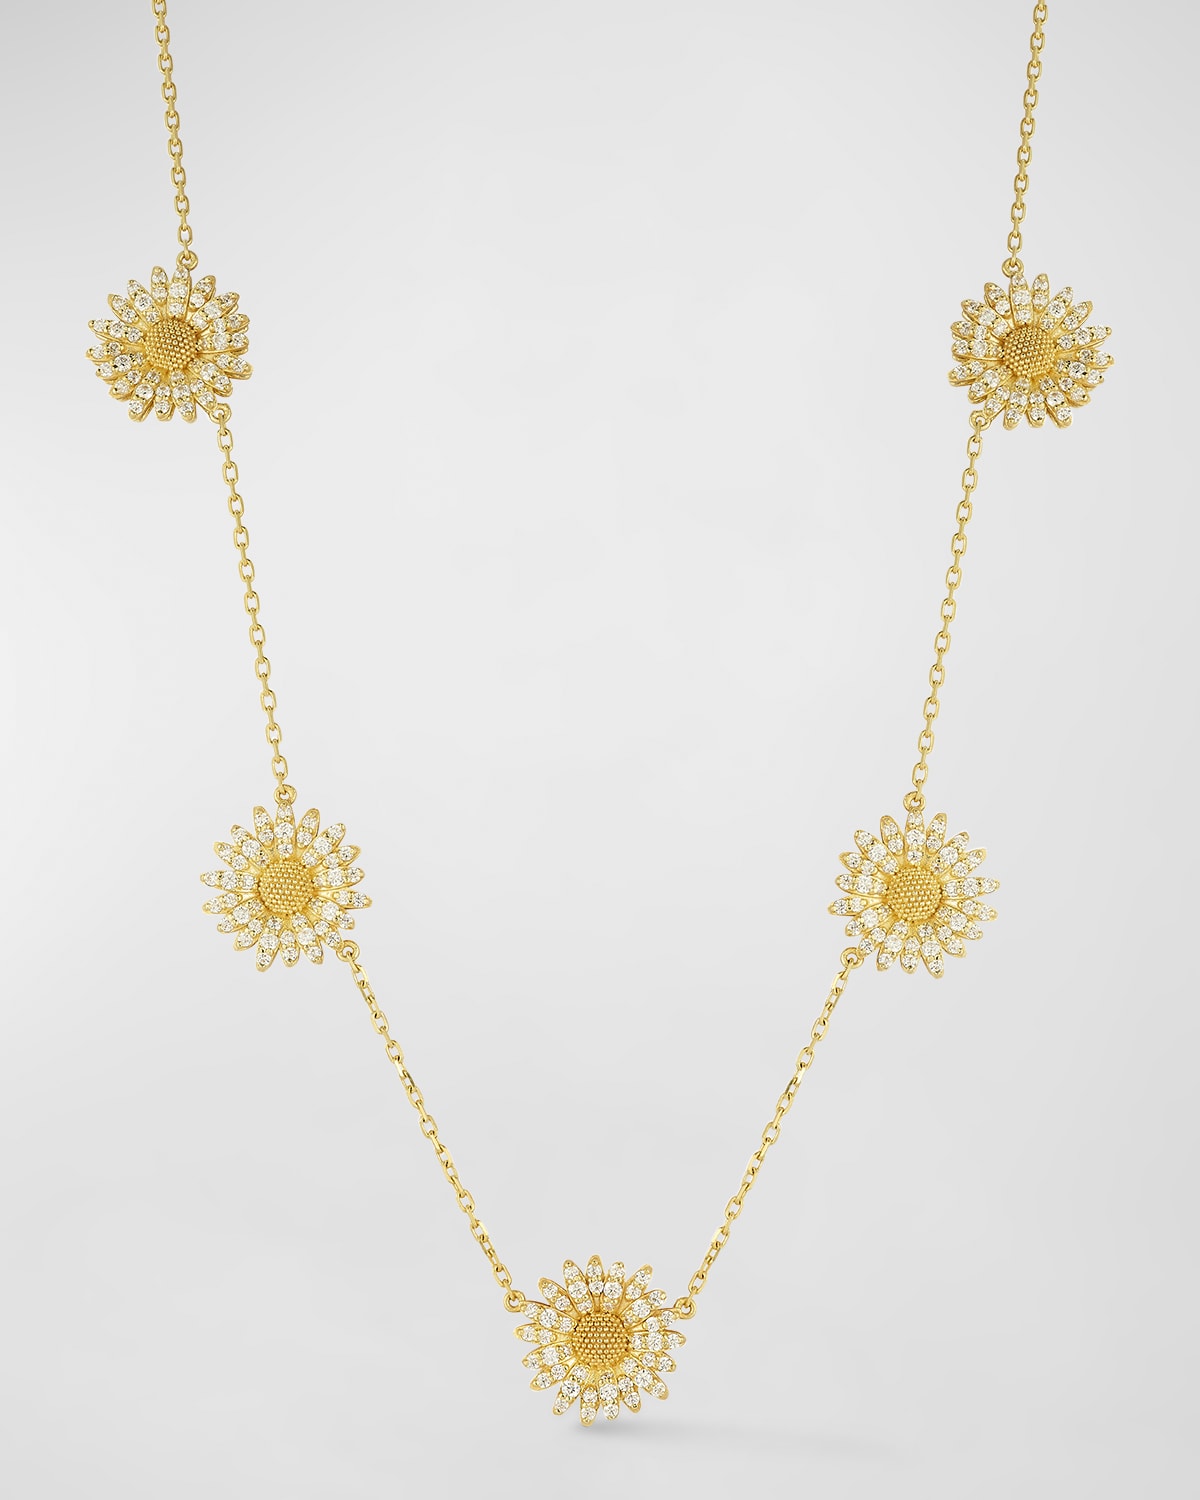 Tanya Farah 18k Yellow Gold Diamond Daisy Station Necklace